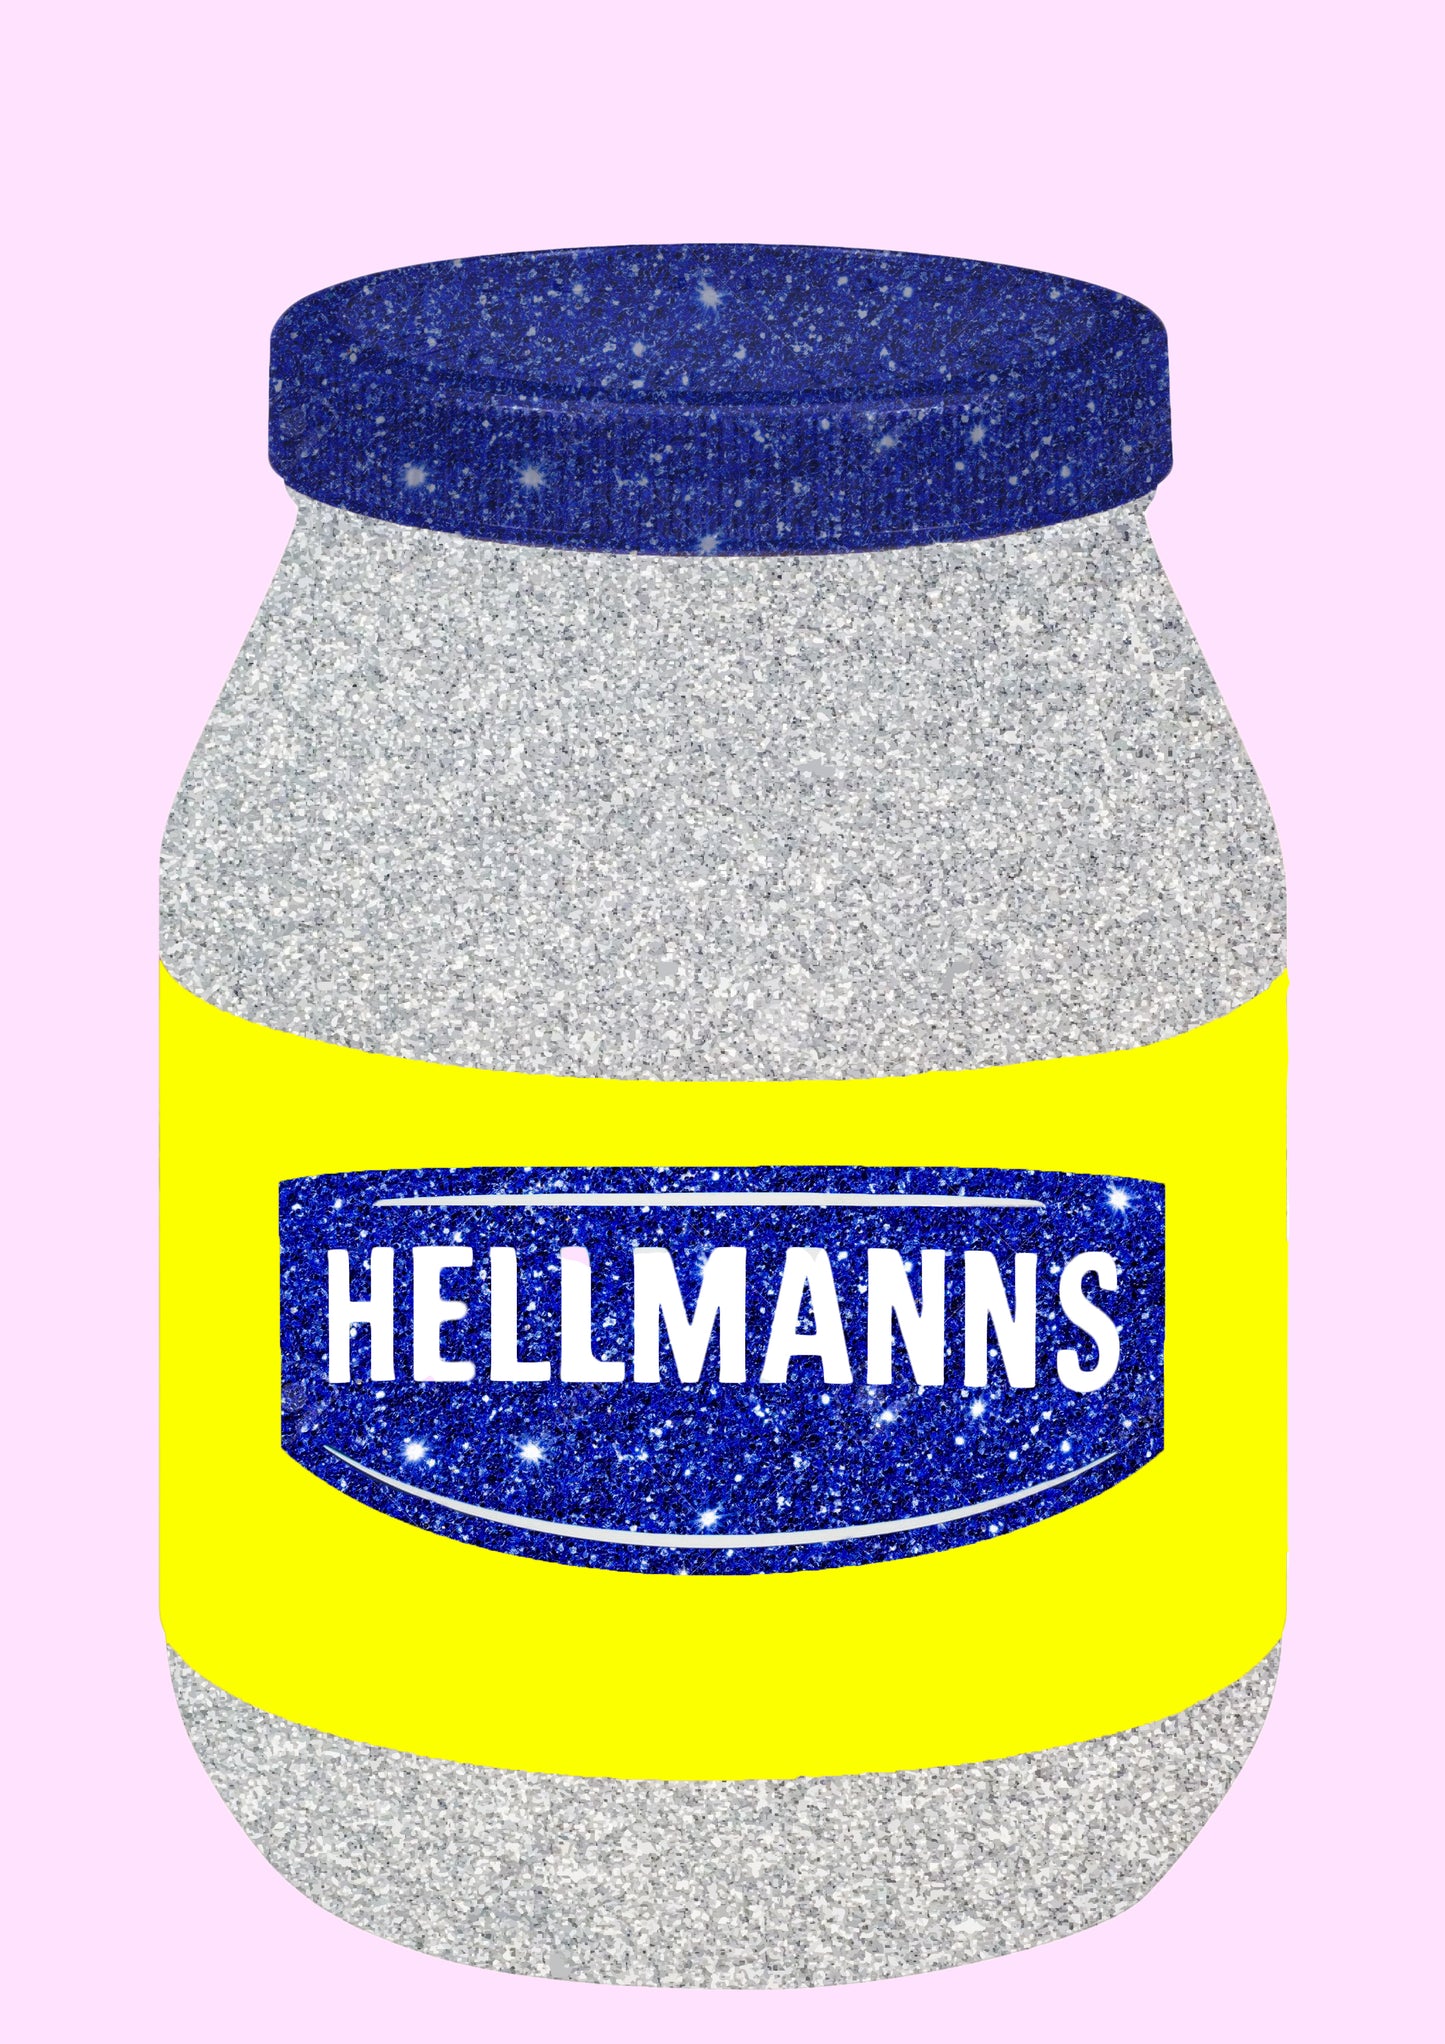 Hellmanns Mayo Sauce Wall Print - PrintedWeird